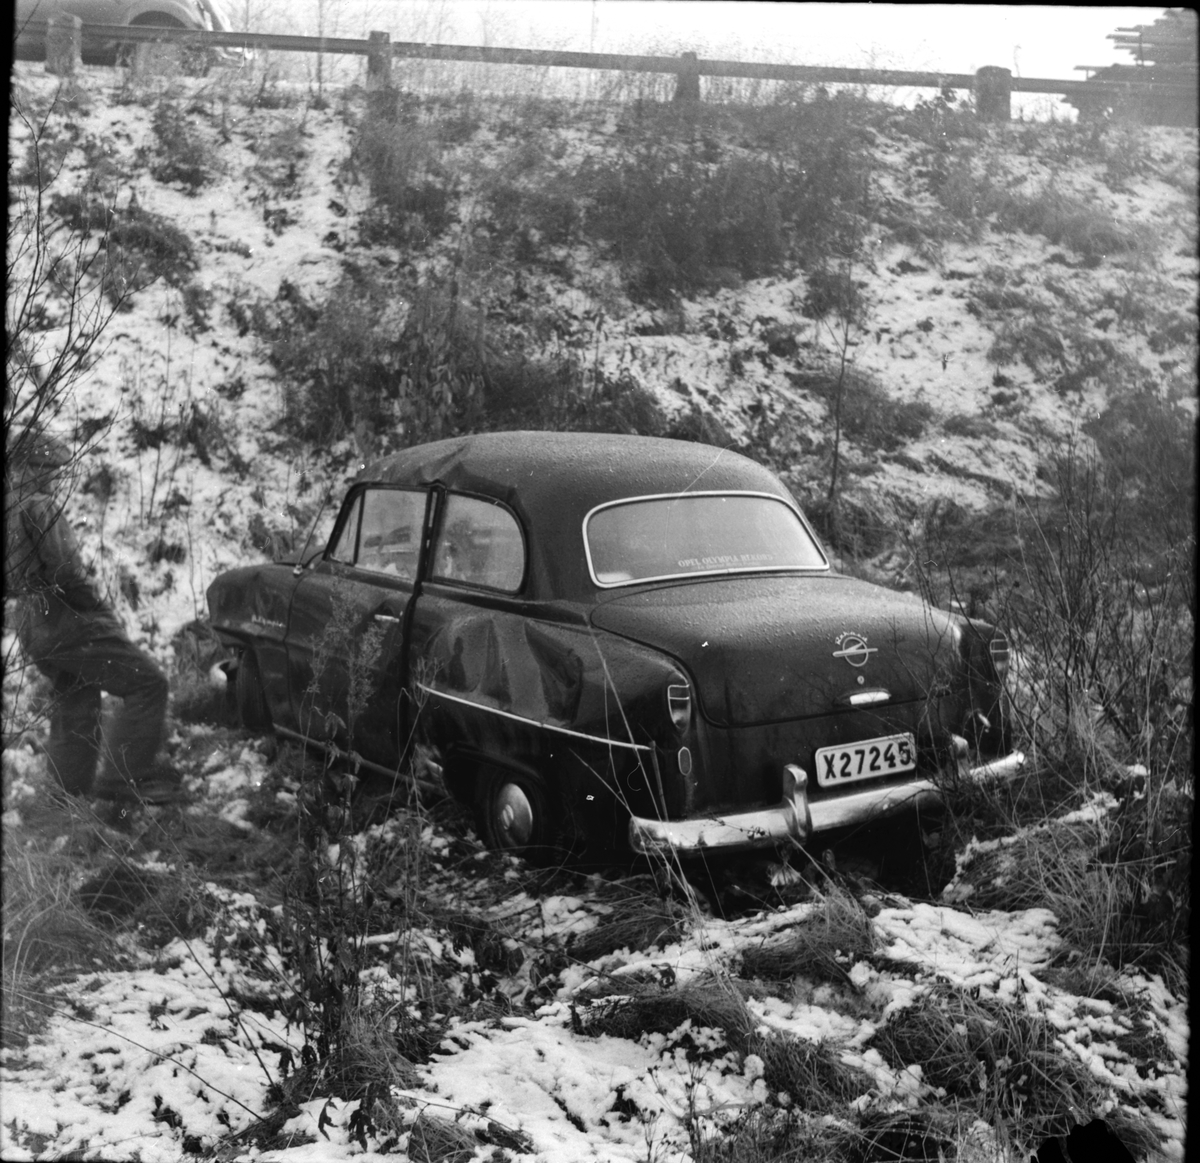 Bilolycka i Röste,
1954

